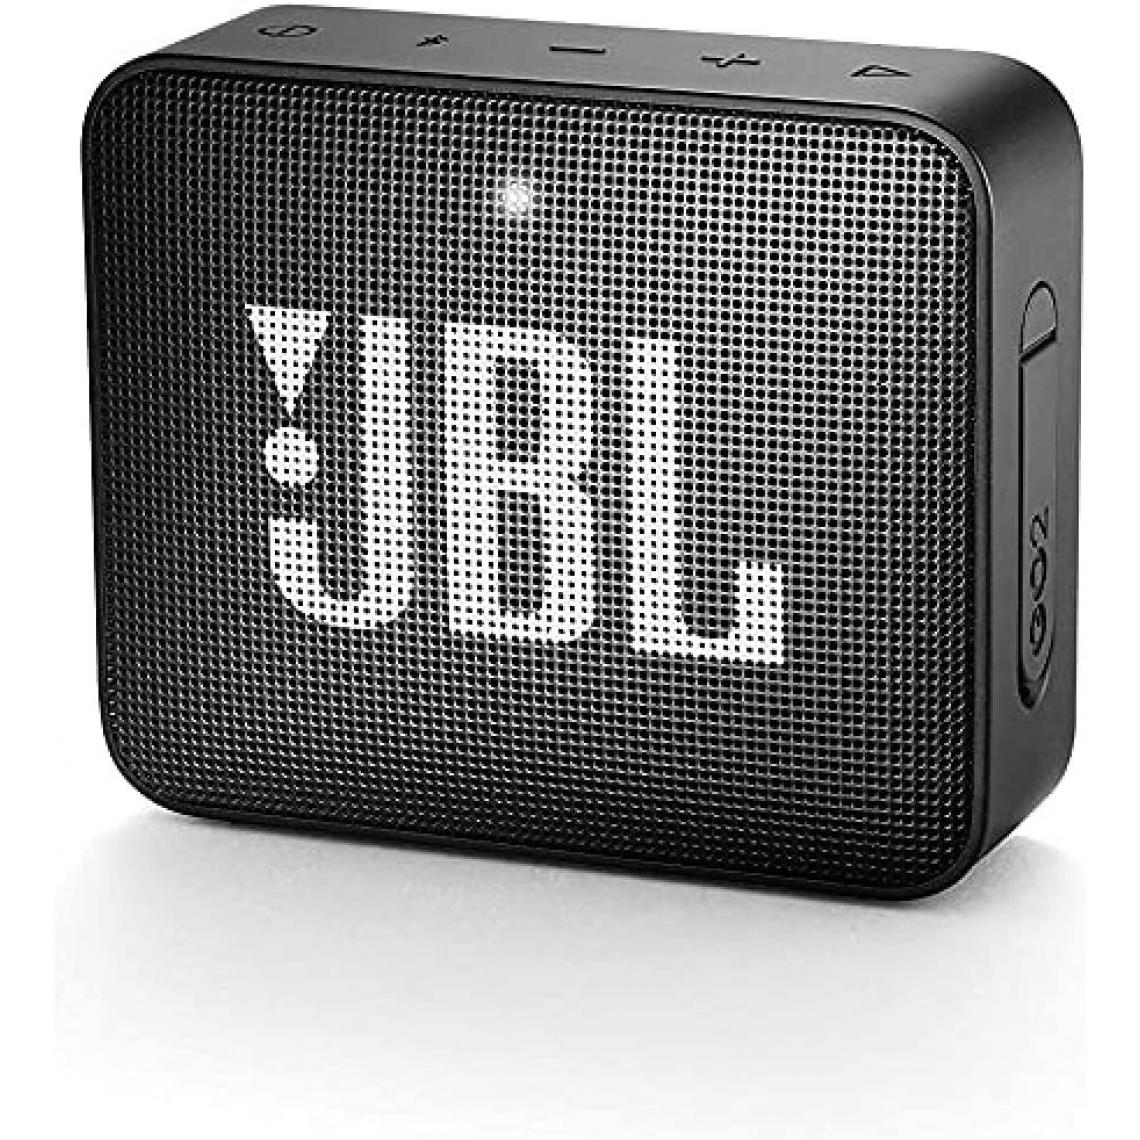 Chrono - Mini Enceinte Bluetooth portable - Étanche pour piscine & plage IPX7 - Autonomie 5hrs - Qualité audio JBL,Noir - Enceintes Hifi